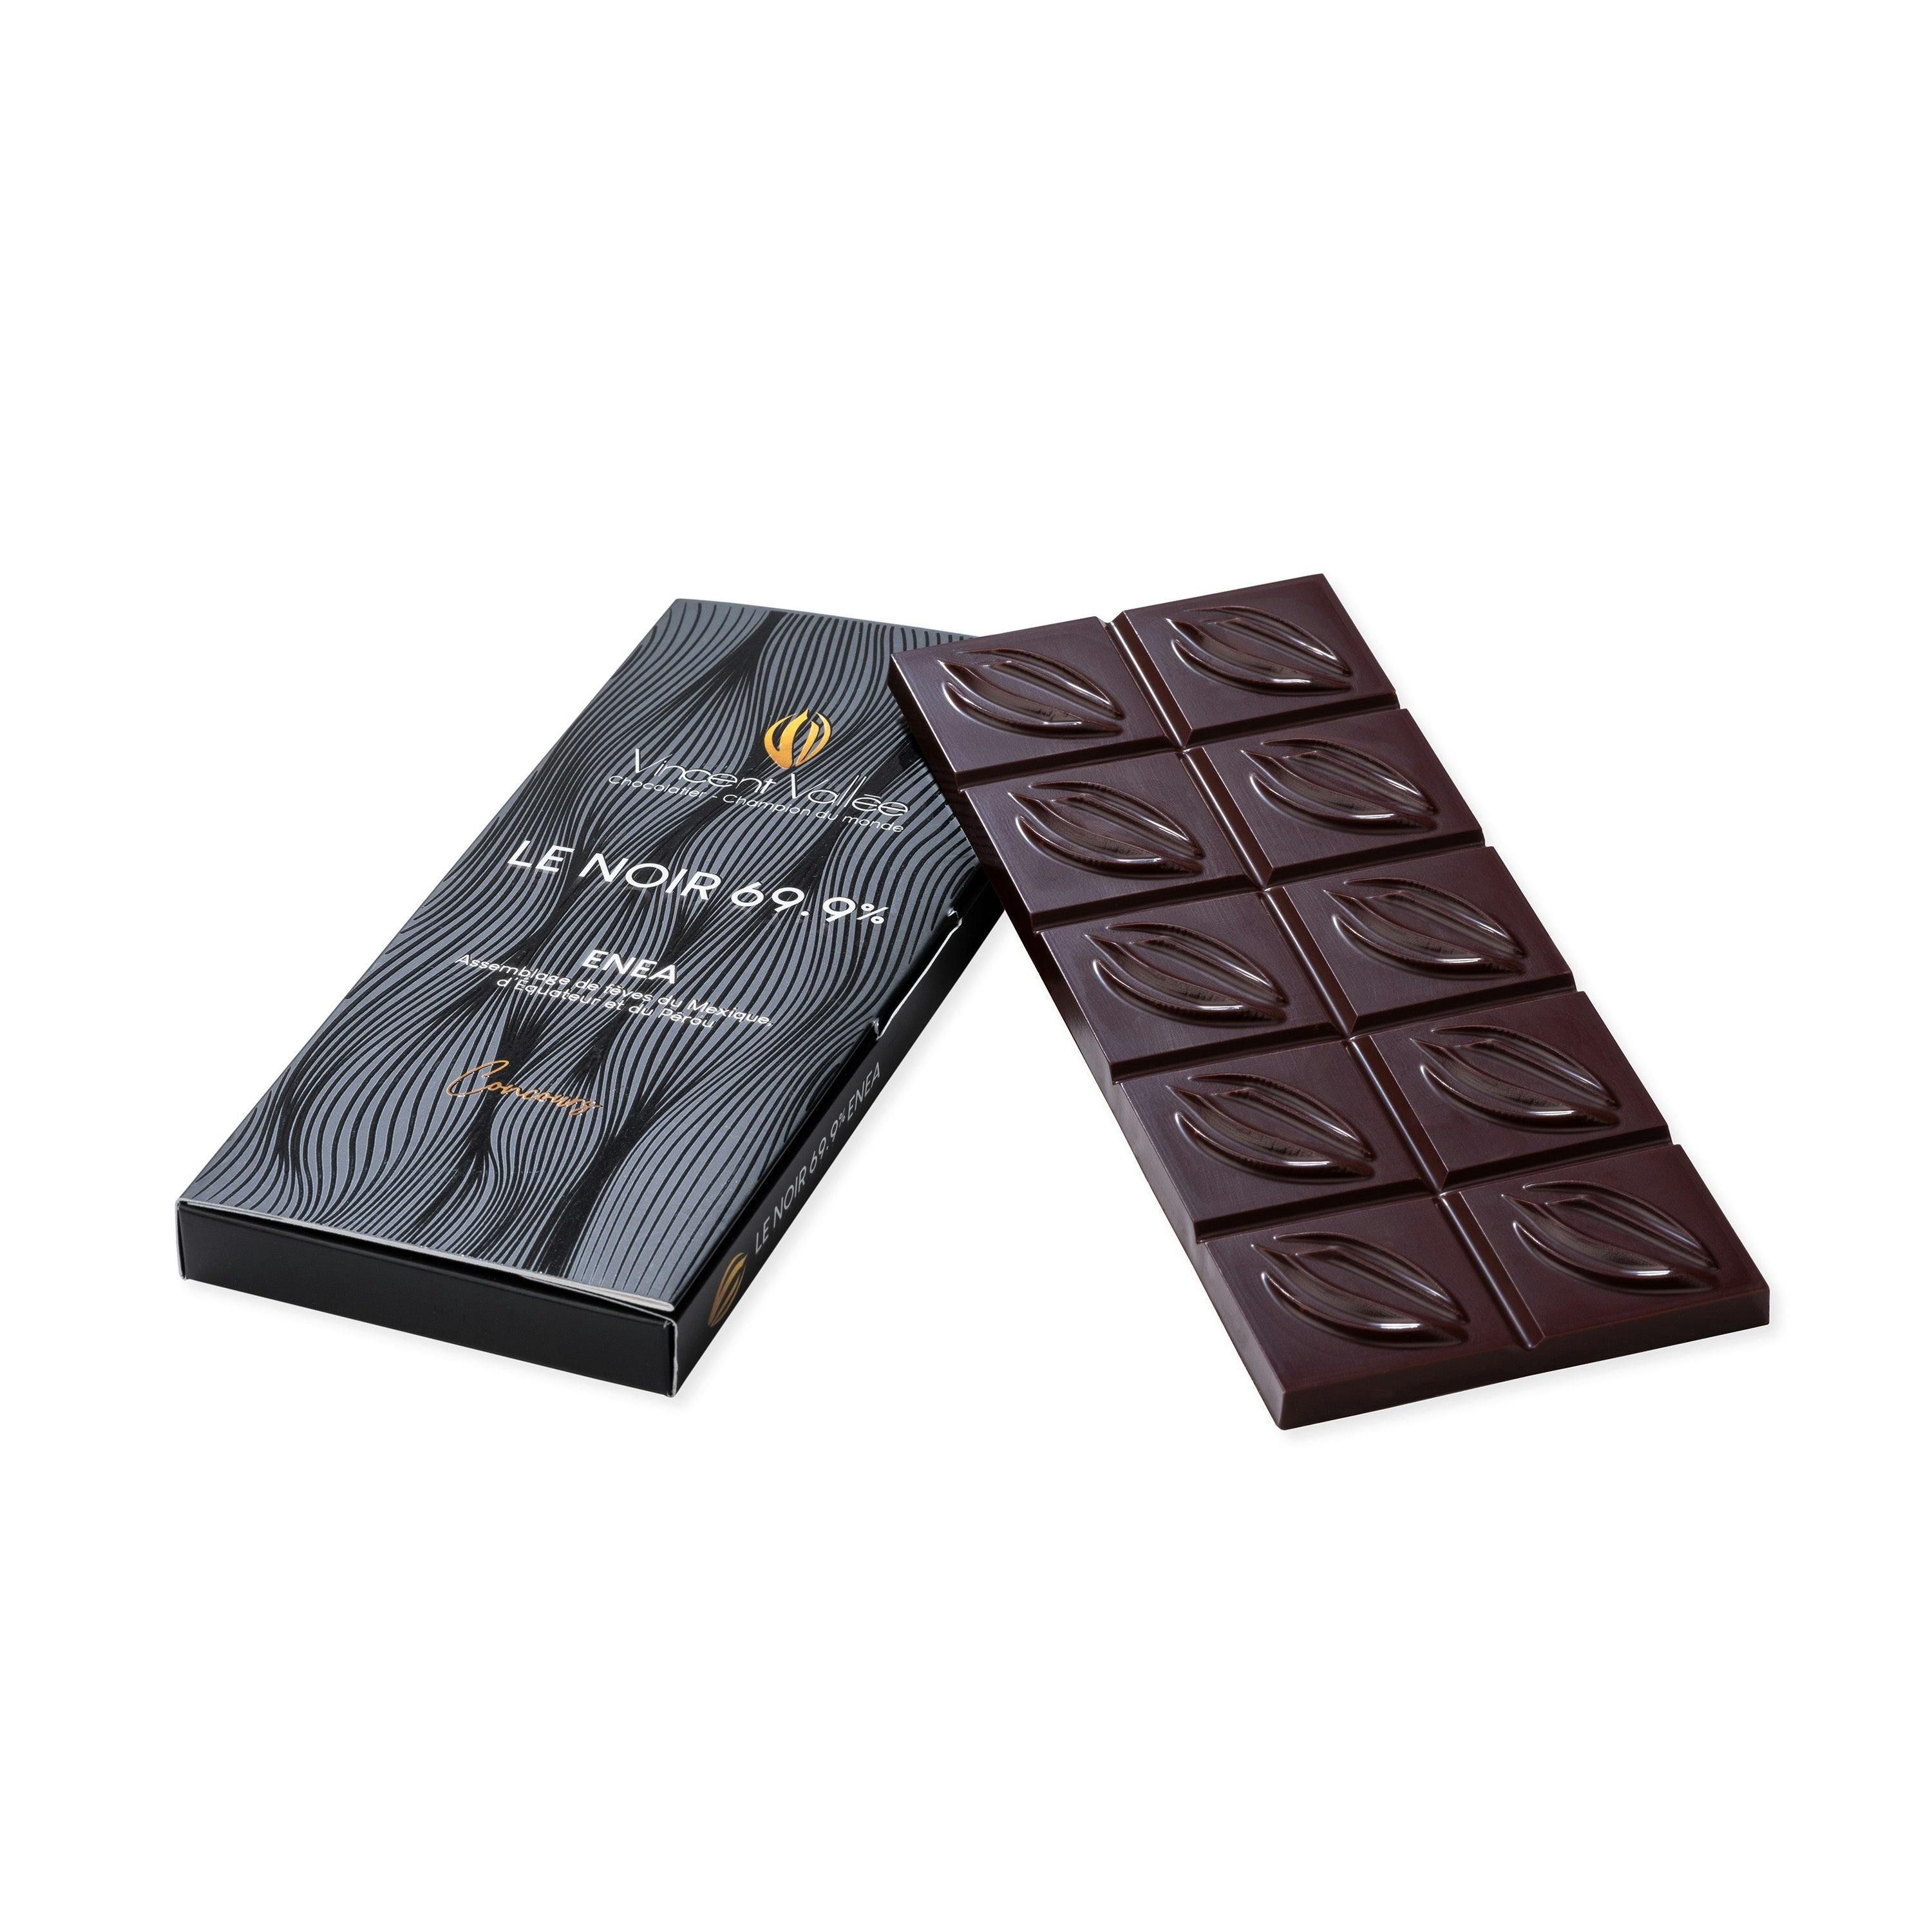 Enea 69.90% BIO CONCOURS - Vincent Vallée chocolatier champion du monde